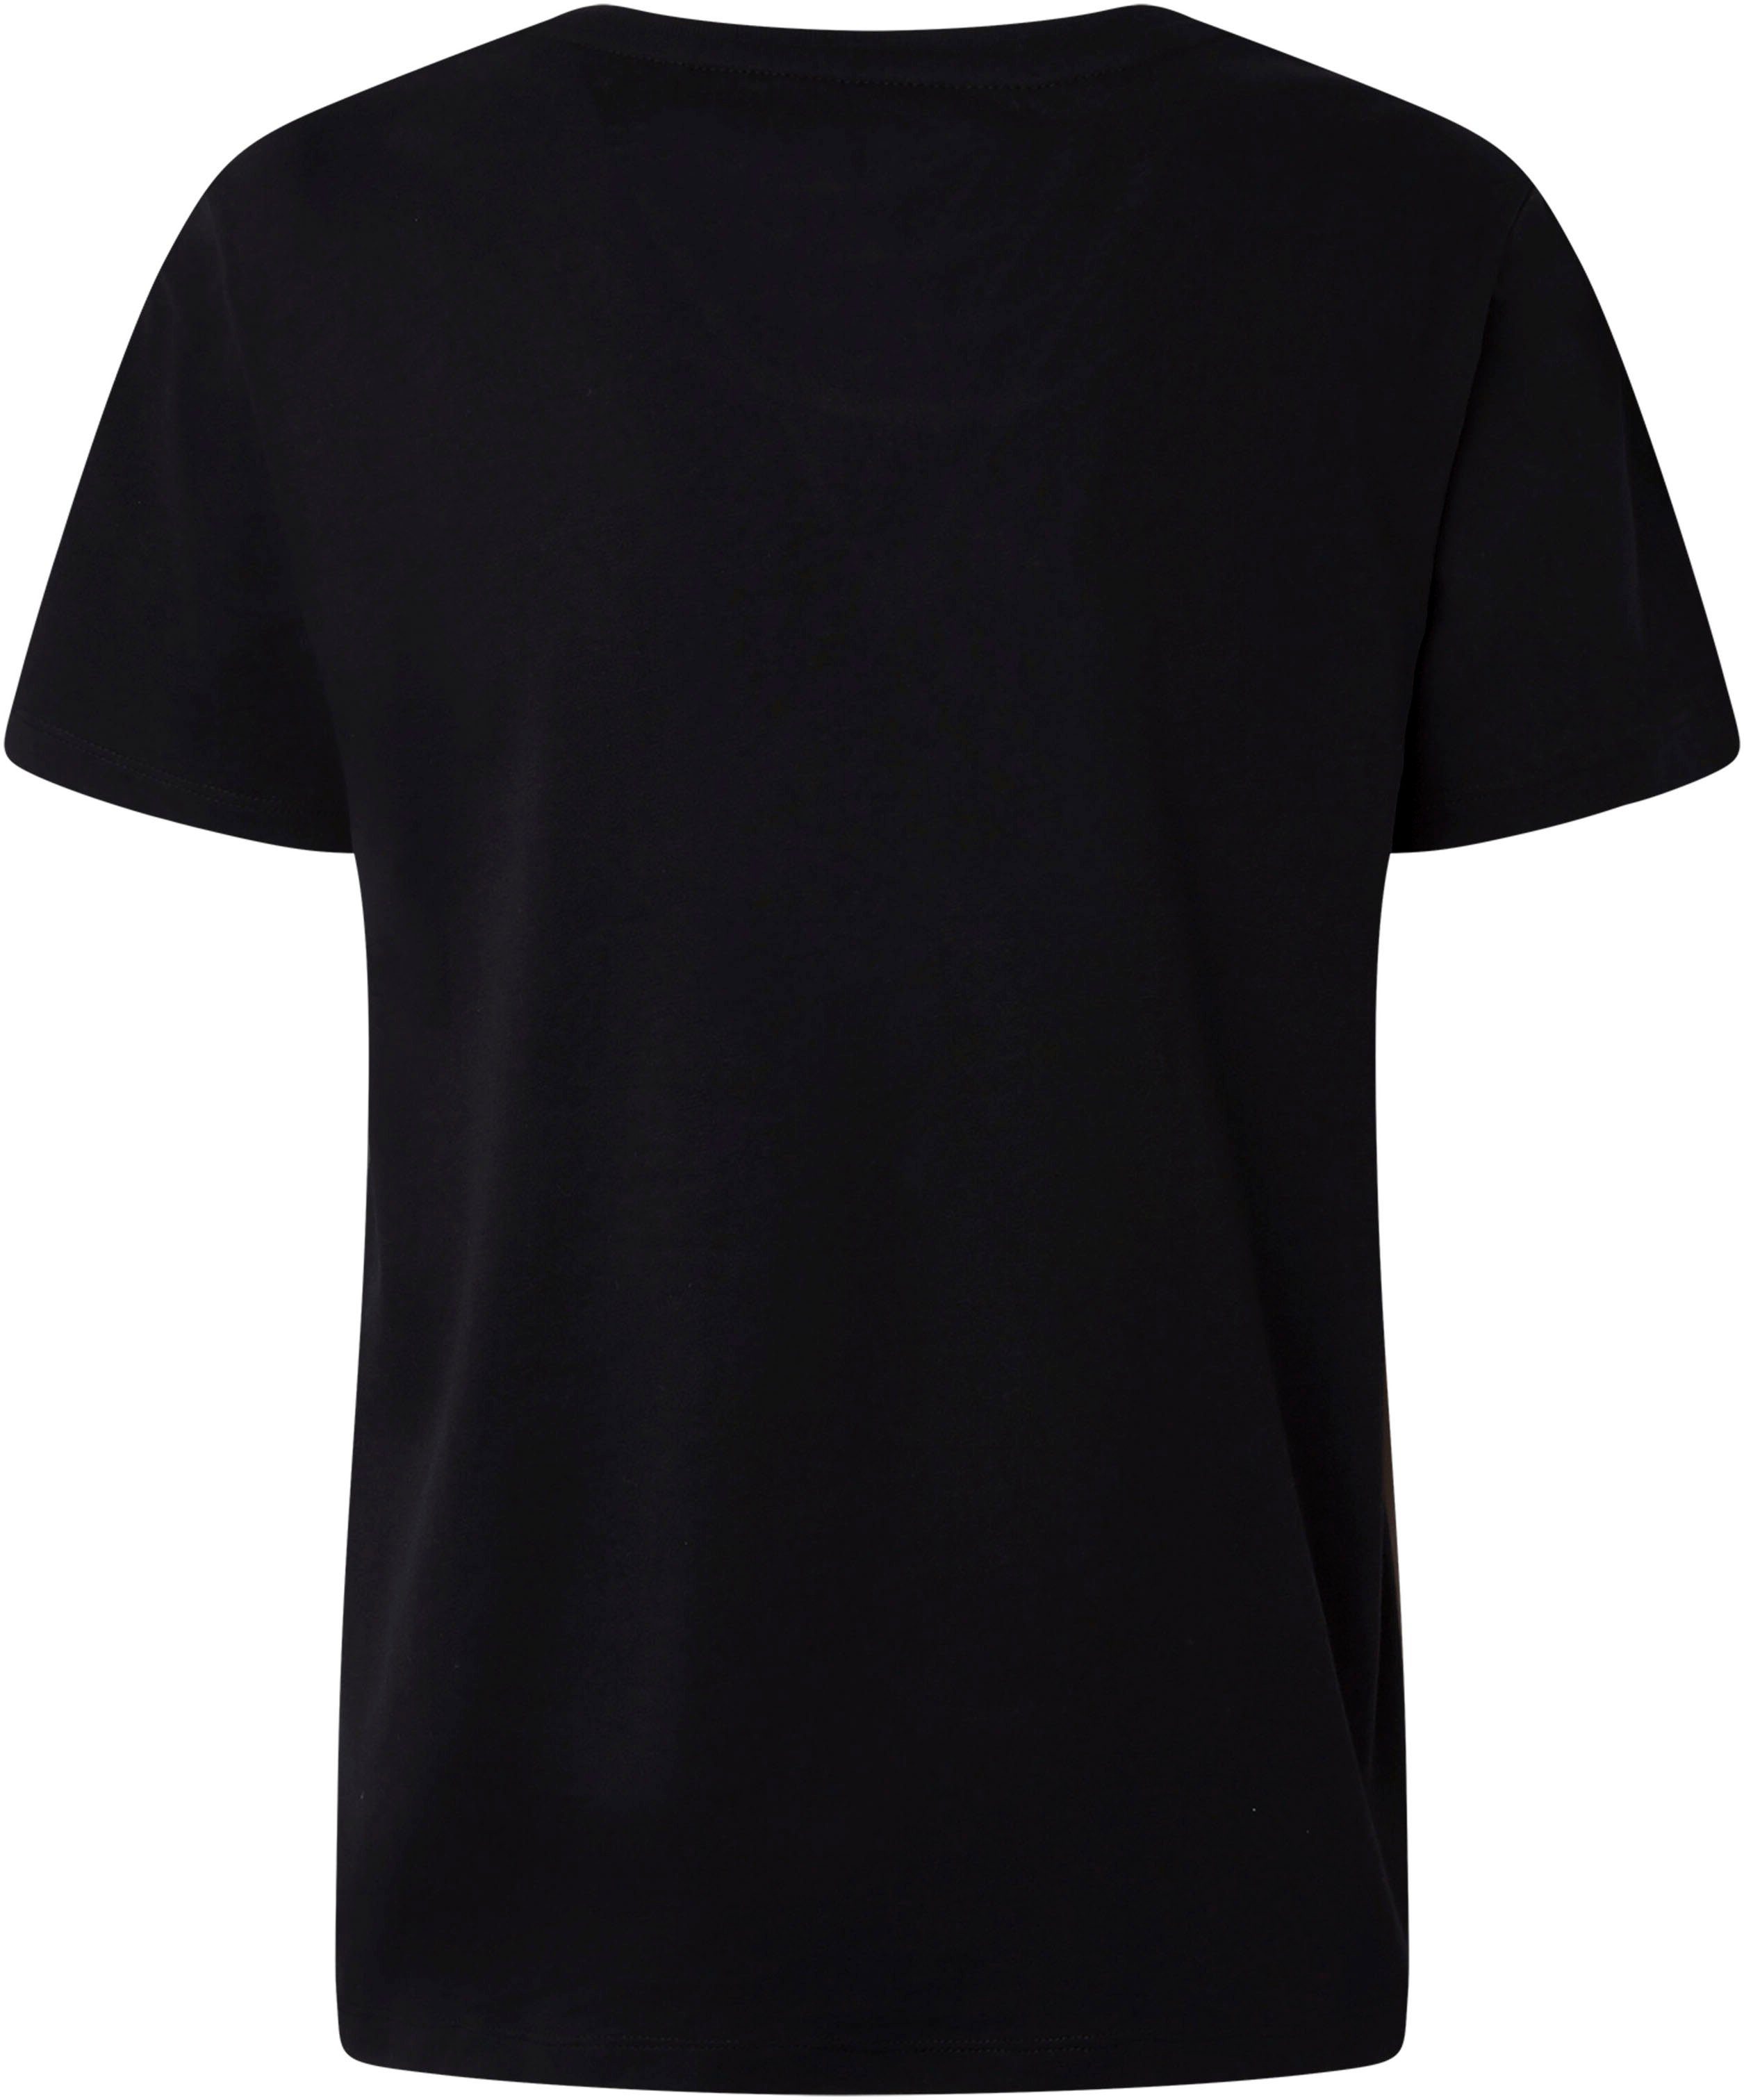 black Lali T-Shirt Pepe Jeans